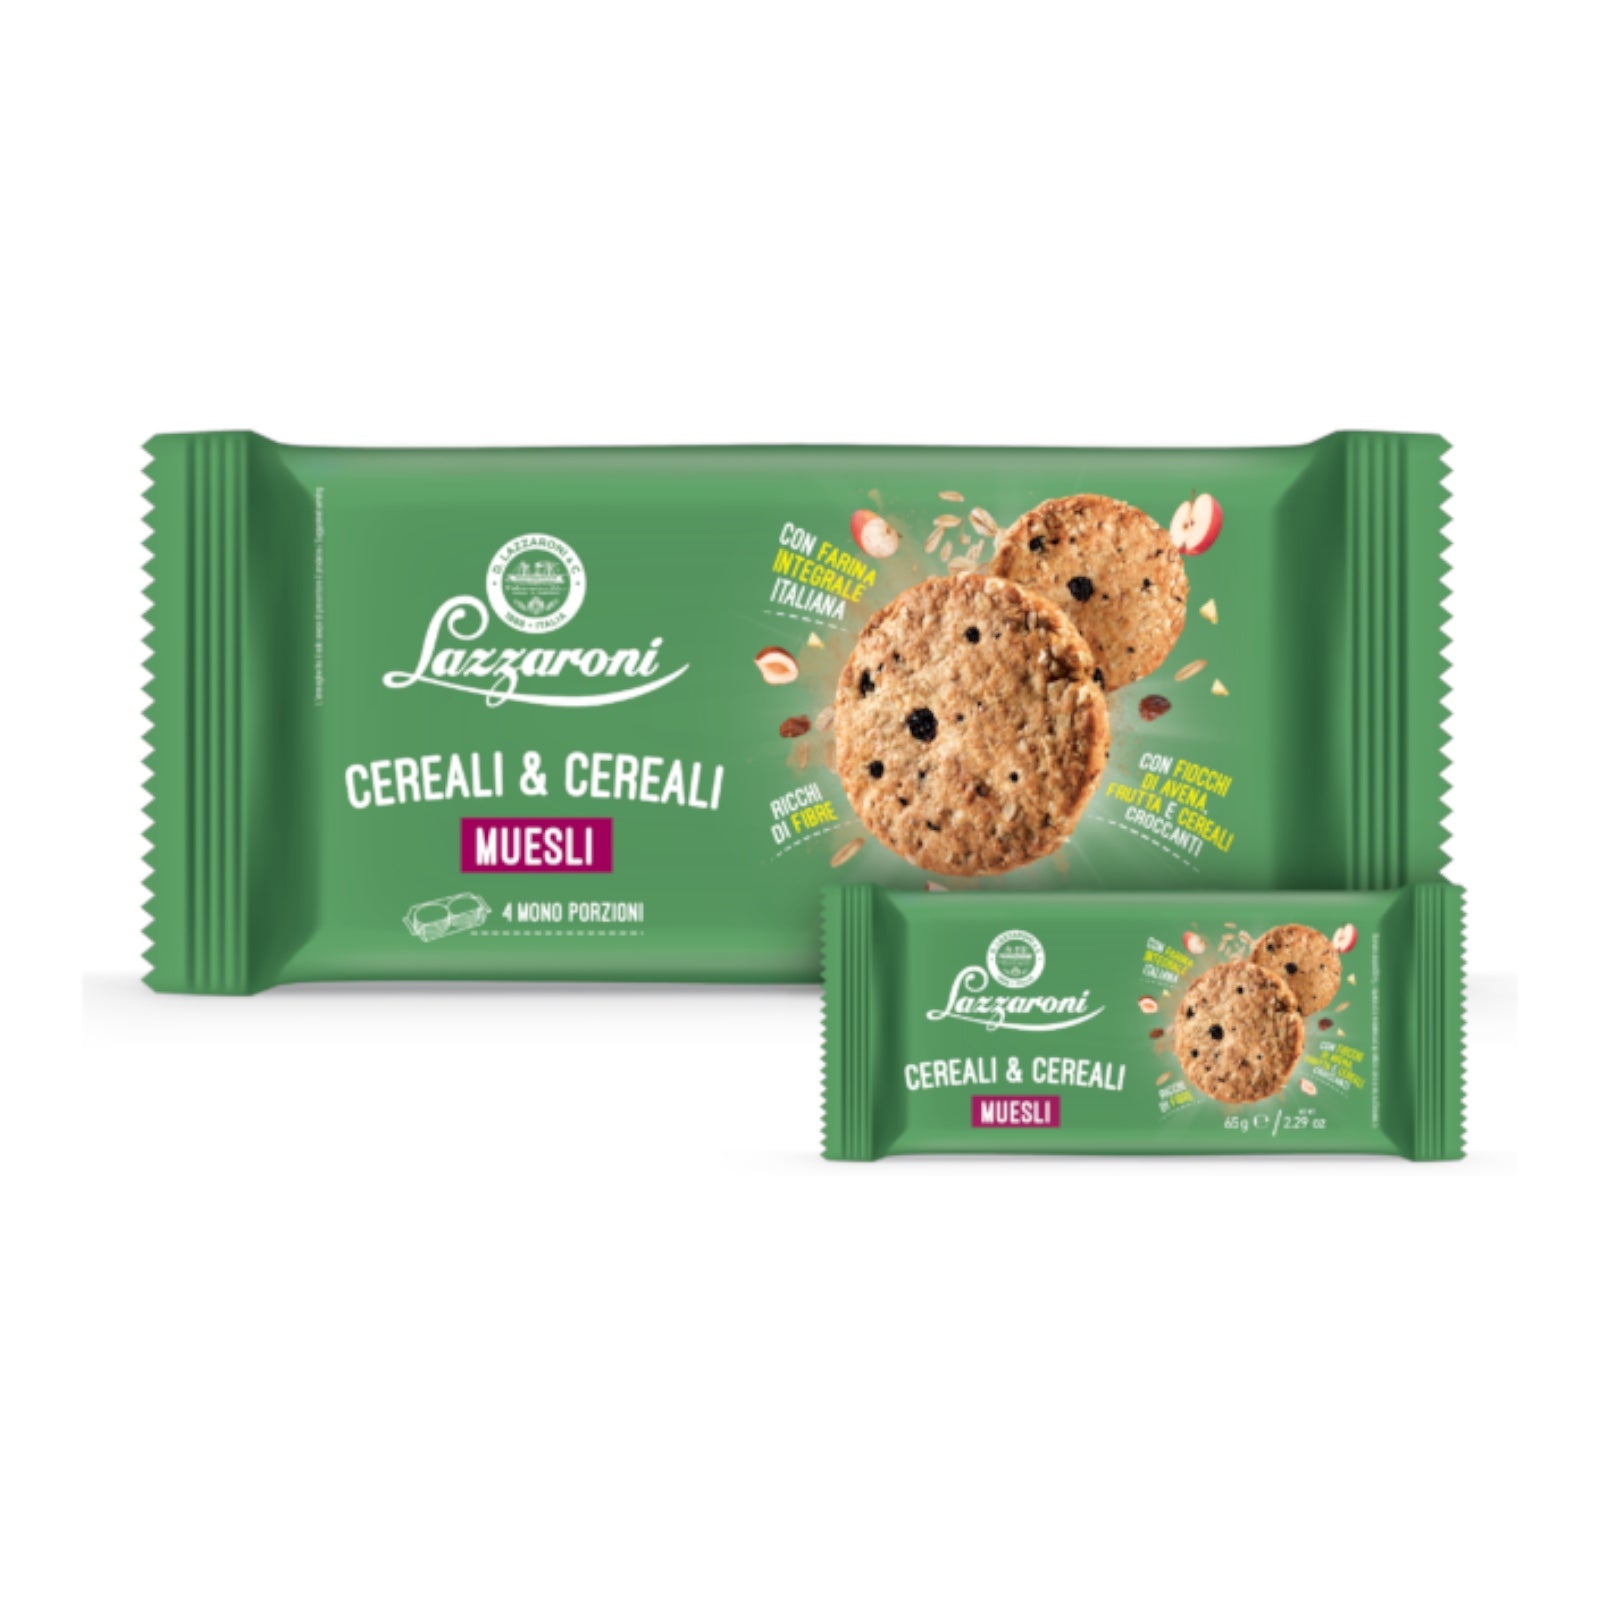 Nutella biscuits, sandwich cookies 166g, Ferrero - Italian Herkut